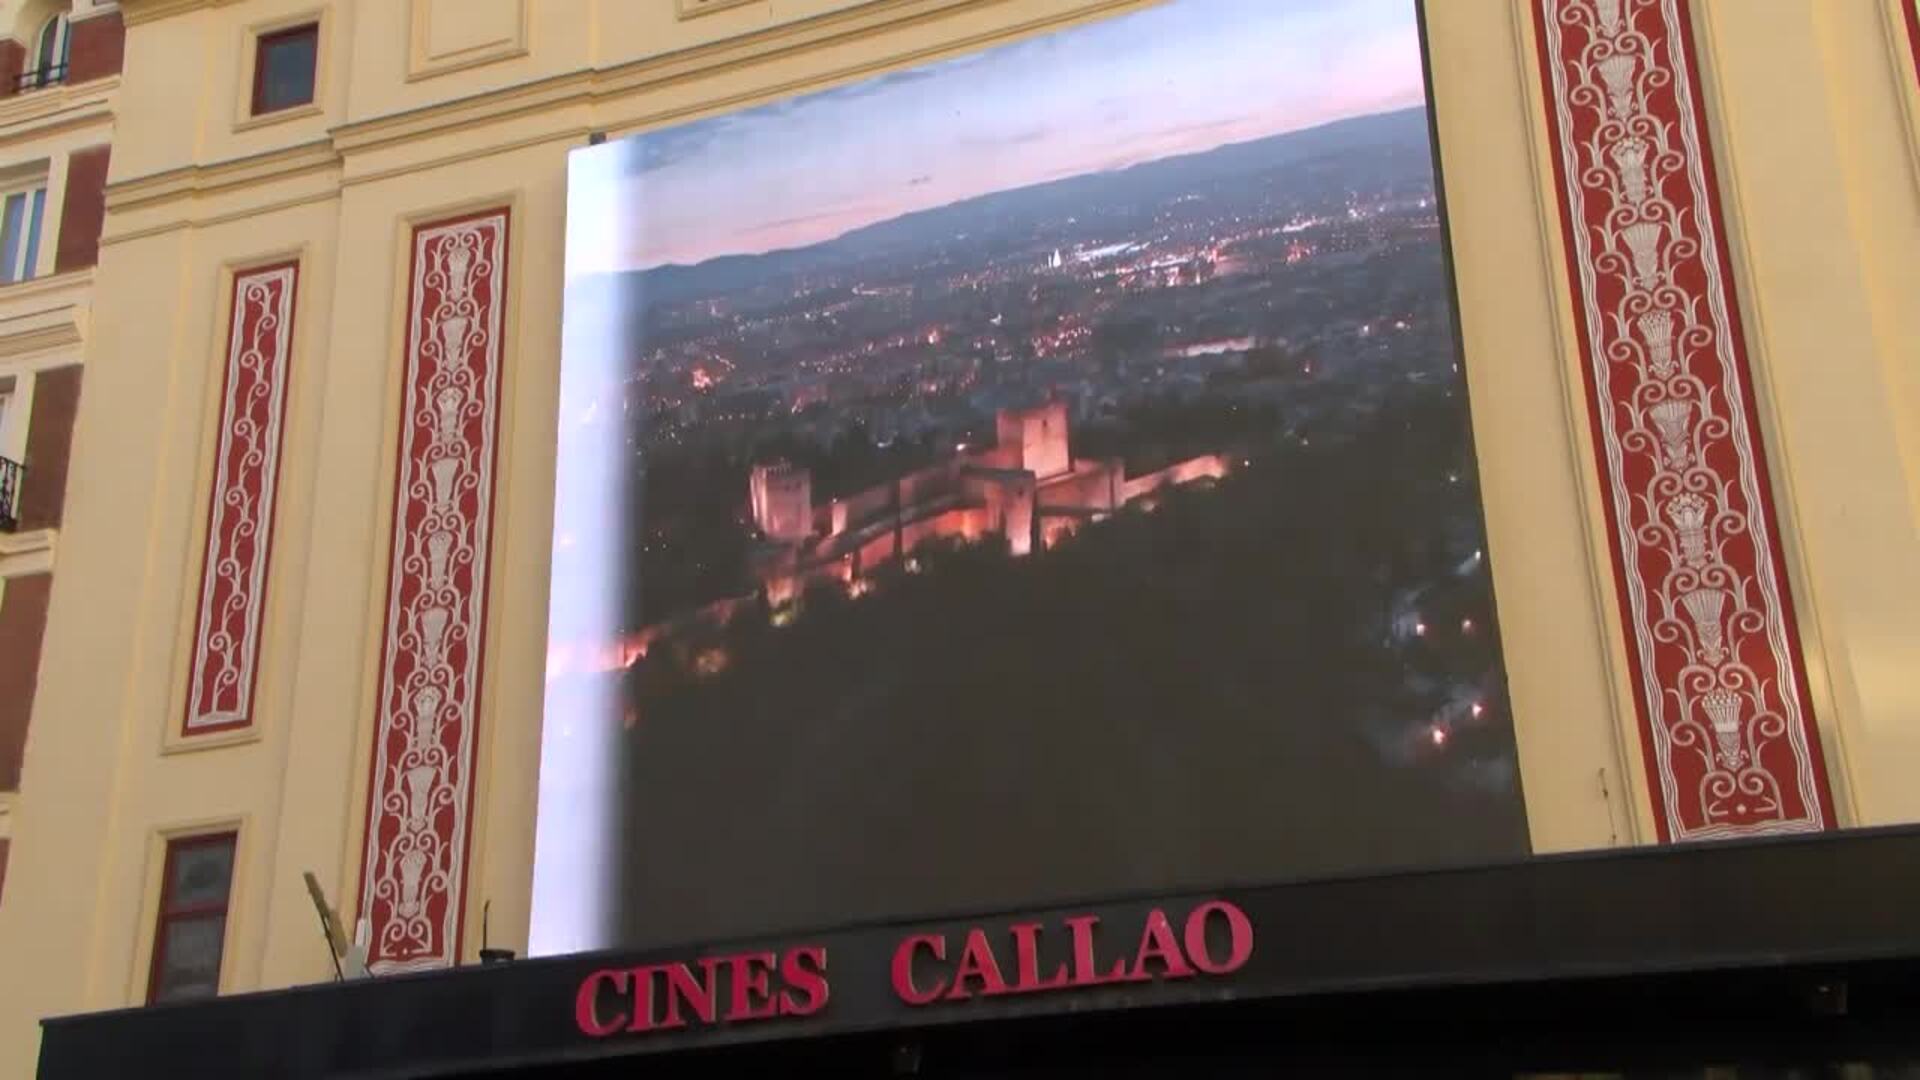 La provincia de Granada se promociona en las grandes pantallas de la Plaza de Callao de Madrid